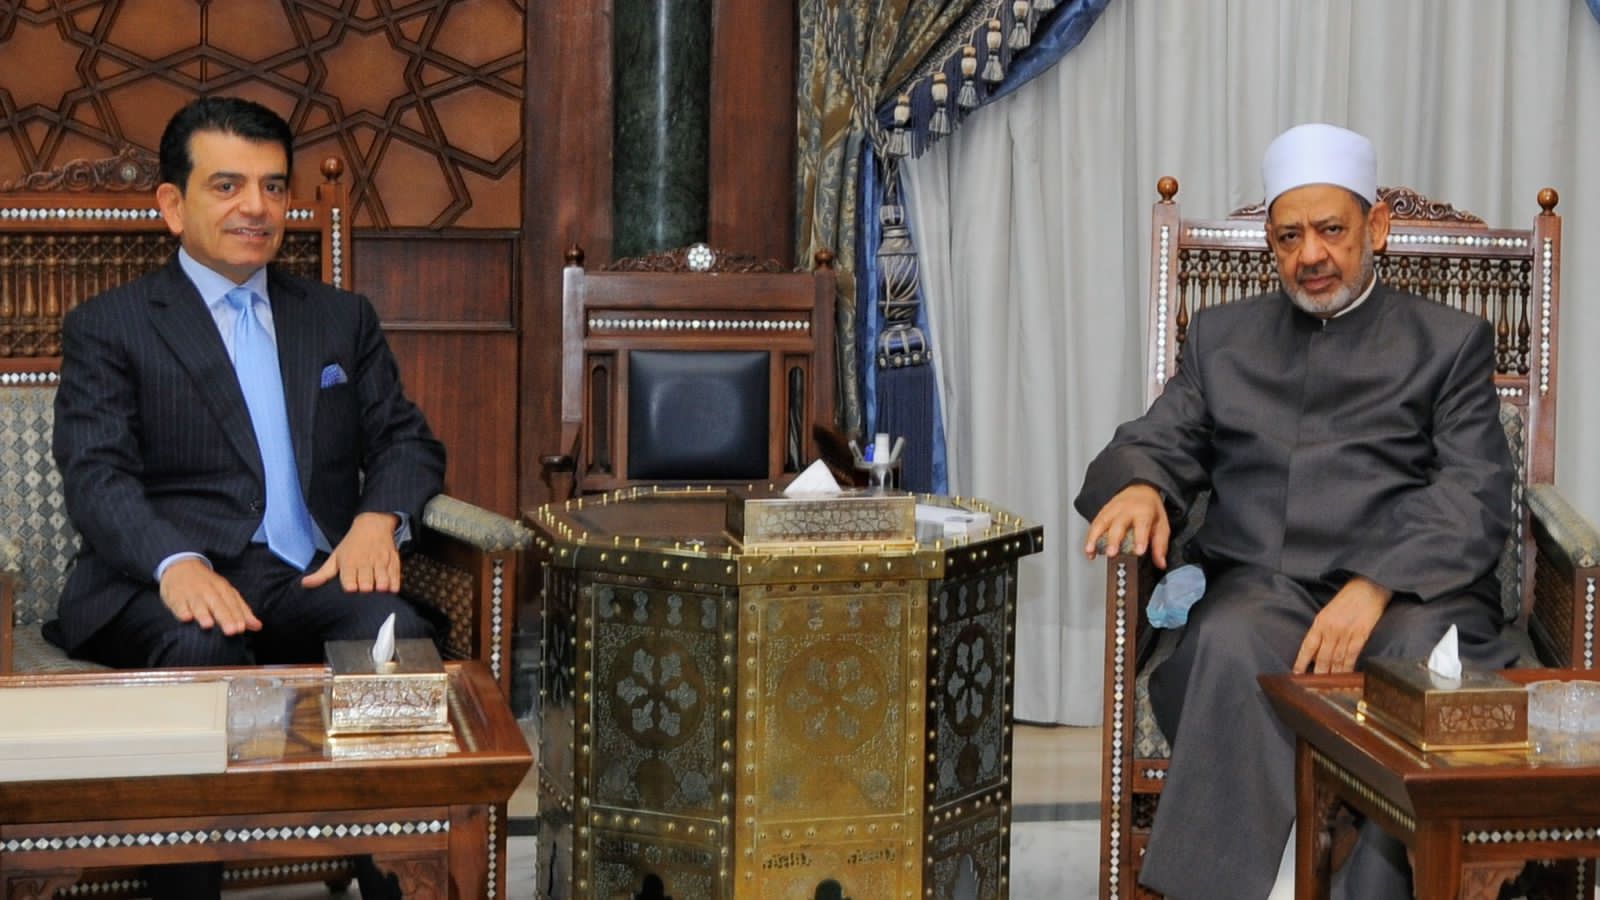 Le Directeur général de l’ICESCO s’entretient au Caire avec le Grand Imam d’Al-Azhar